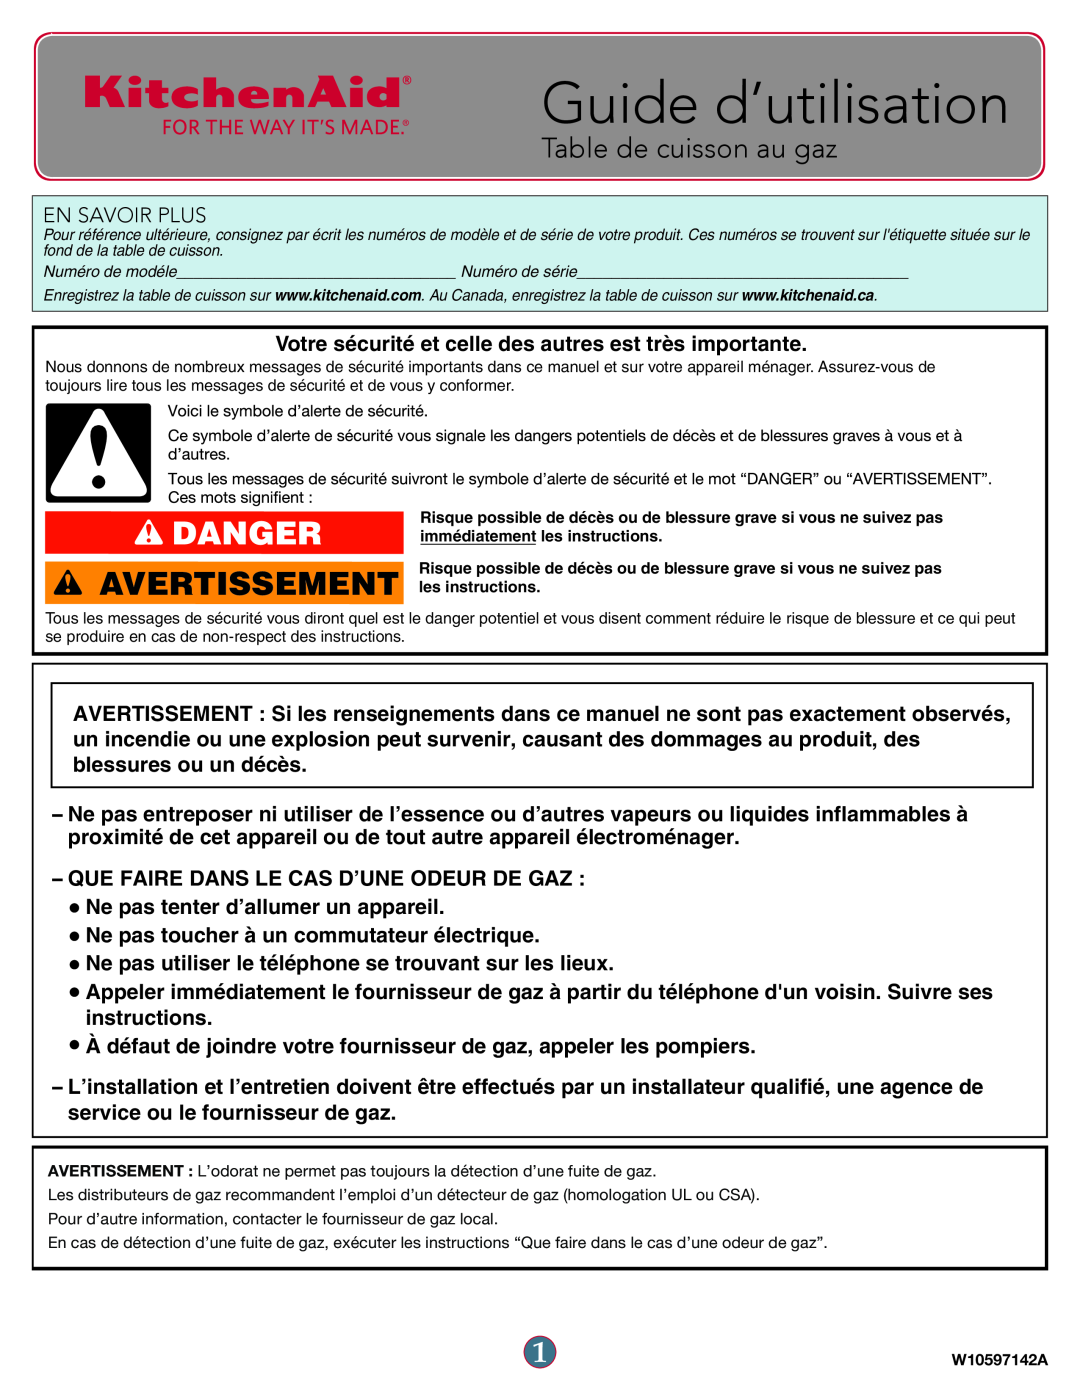 KitchenAid W10597142A manual Guide d’utilisation, Avertissement, Table de cuisson au gaz, Danger 